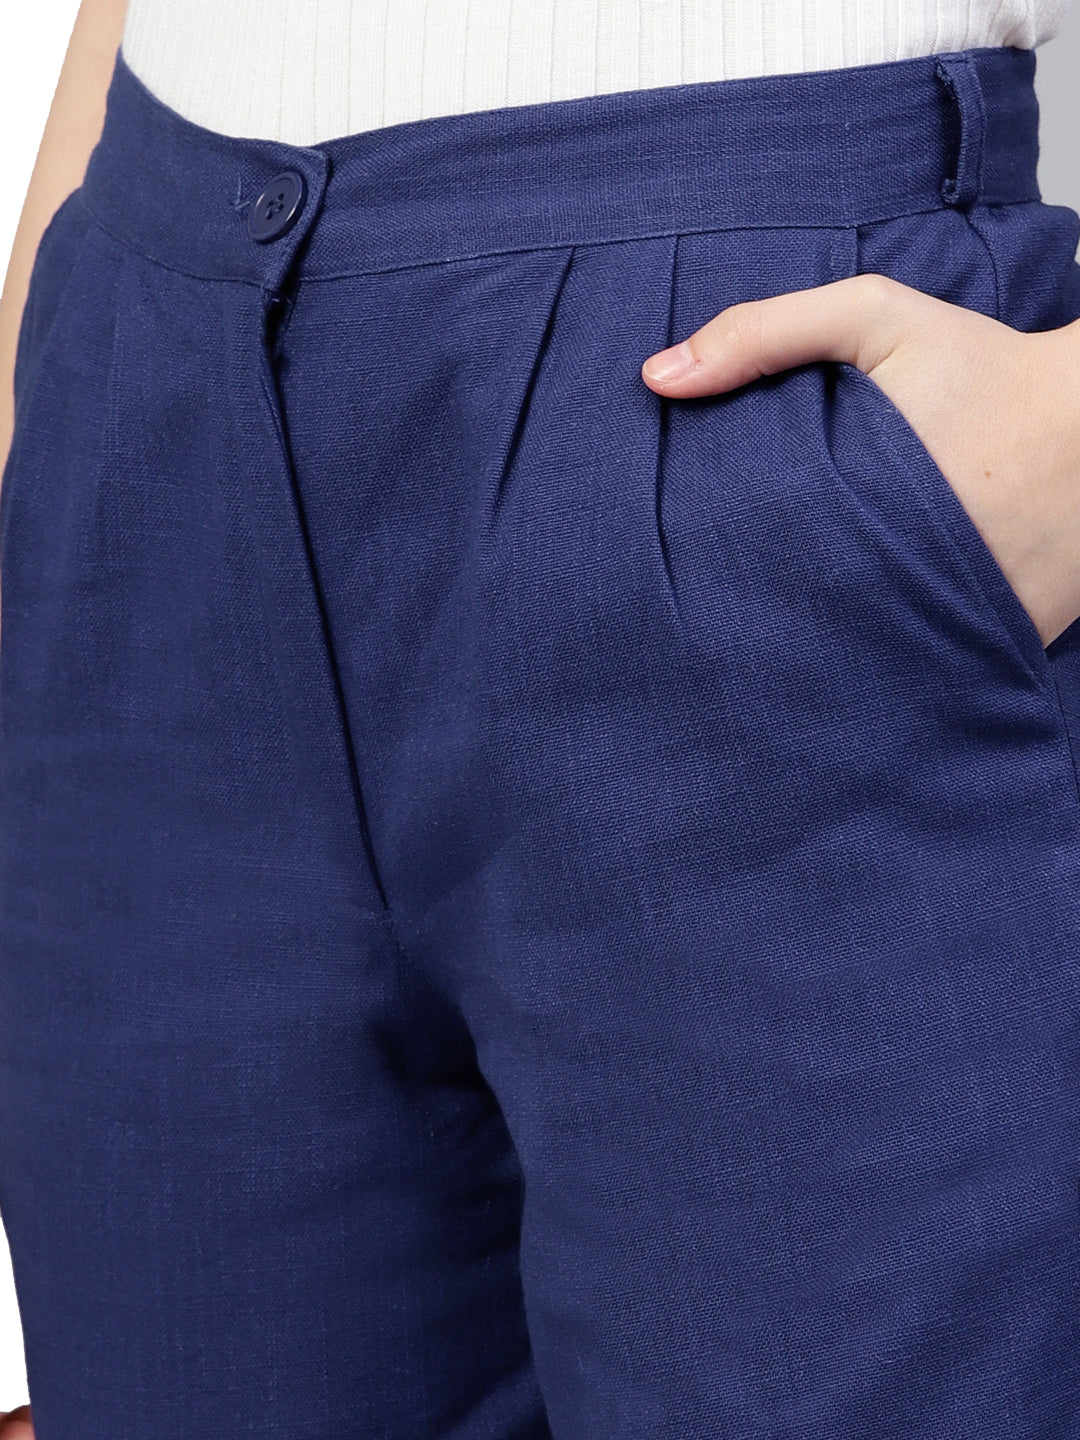 Royal Blue Solid Cotton Slub Trousers